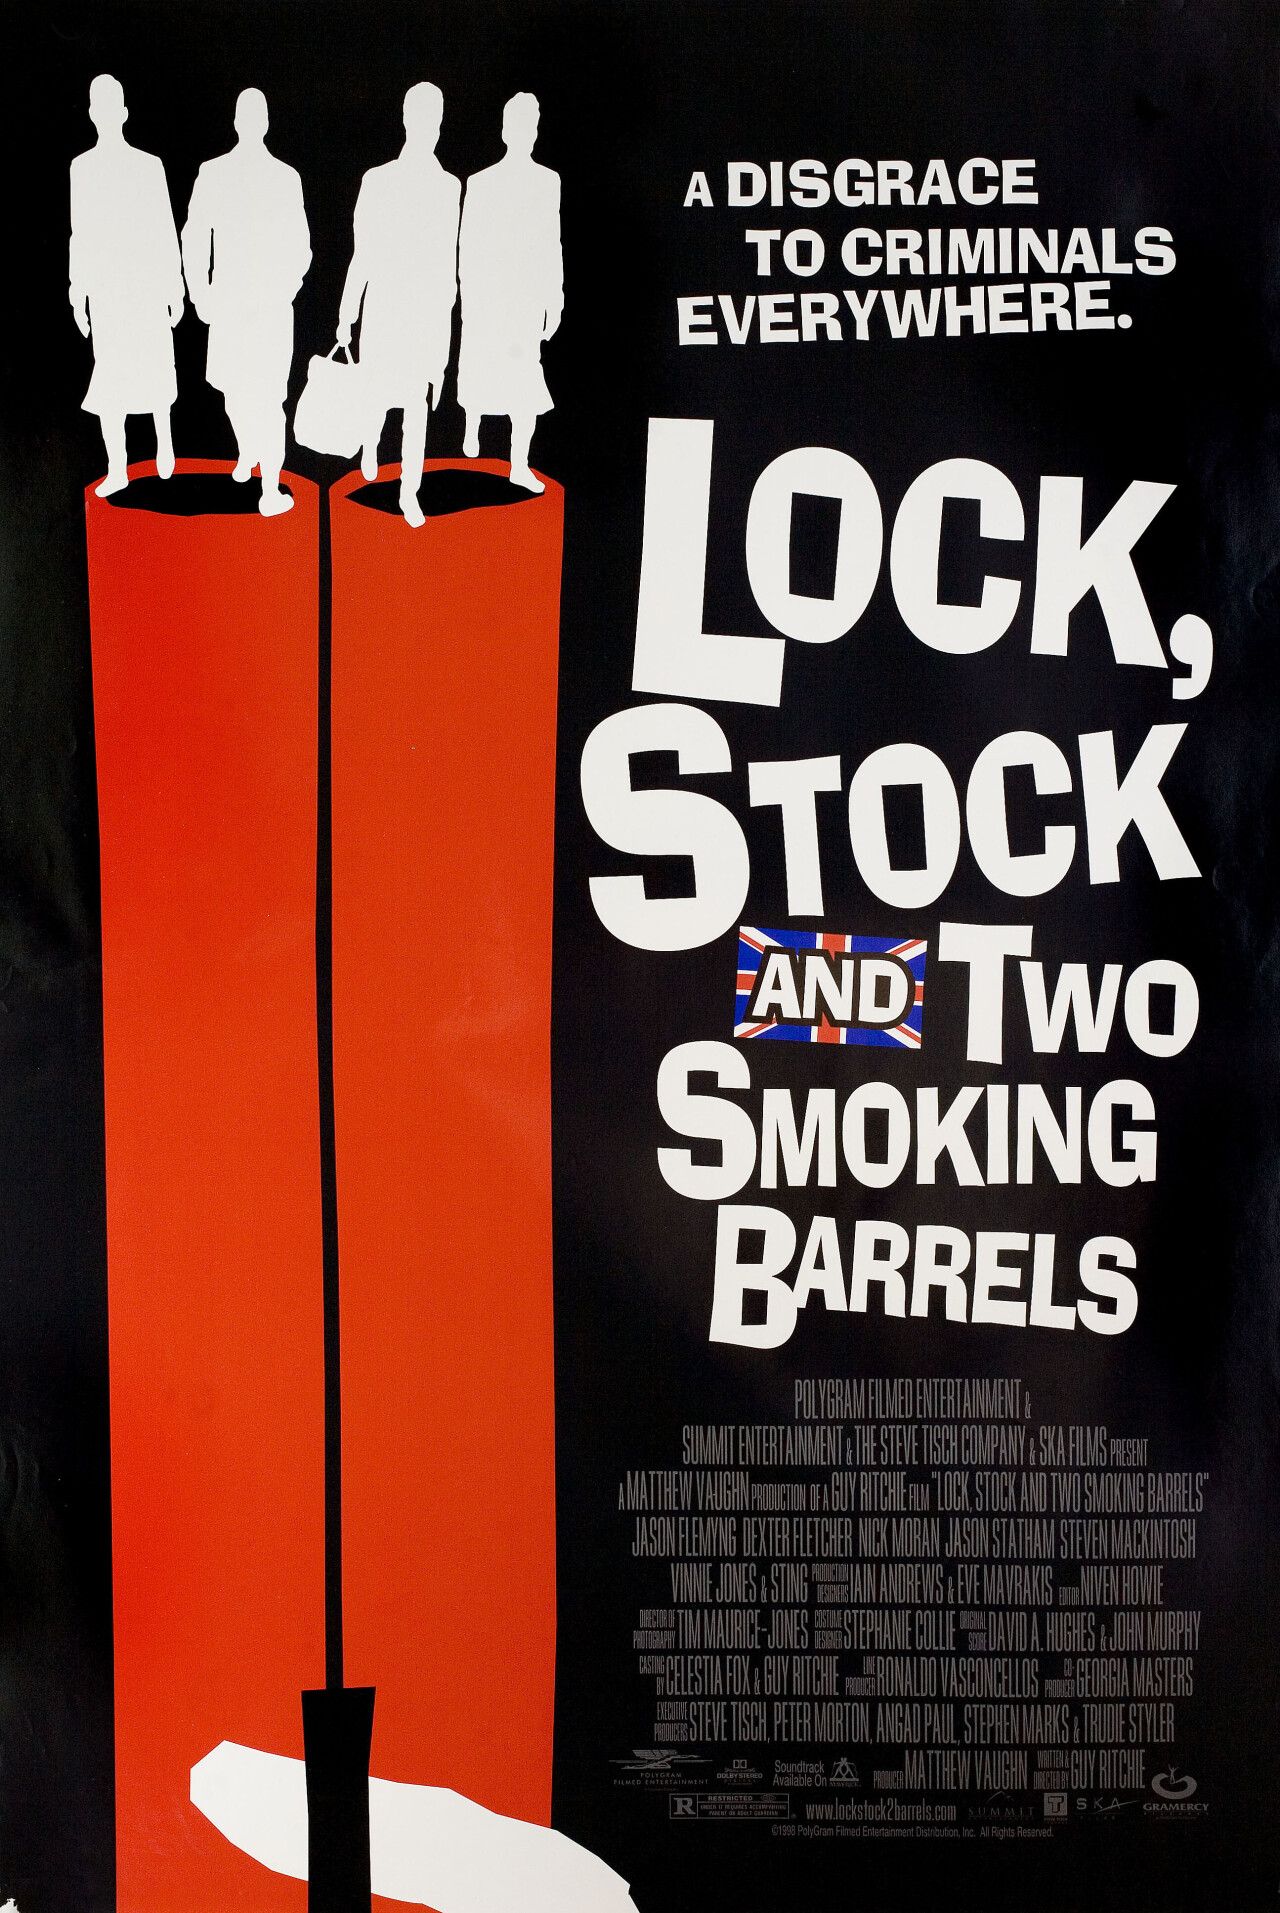 Карты, деньги, два ствола (Lock, Stock and Two Smoking Barrels, 1998), режиссёр Гай Ричи, американский постер к фильму (графический дизайн, 1998 год)